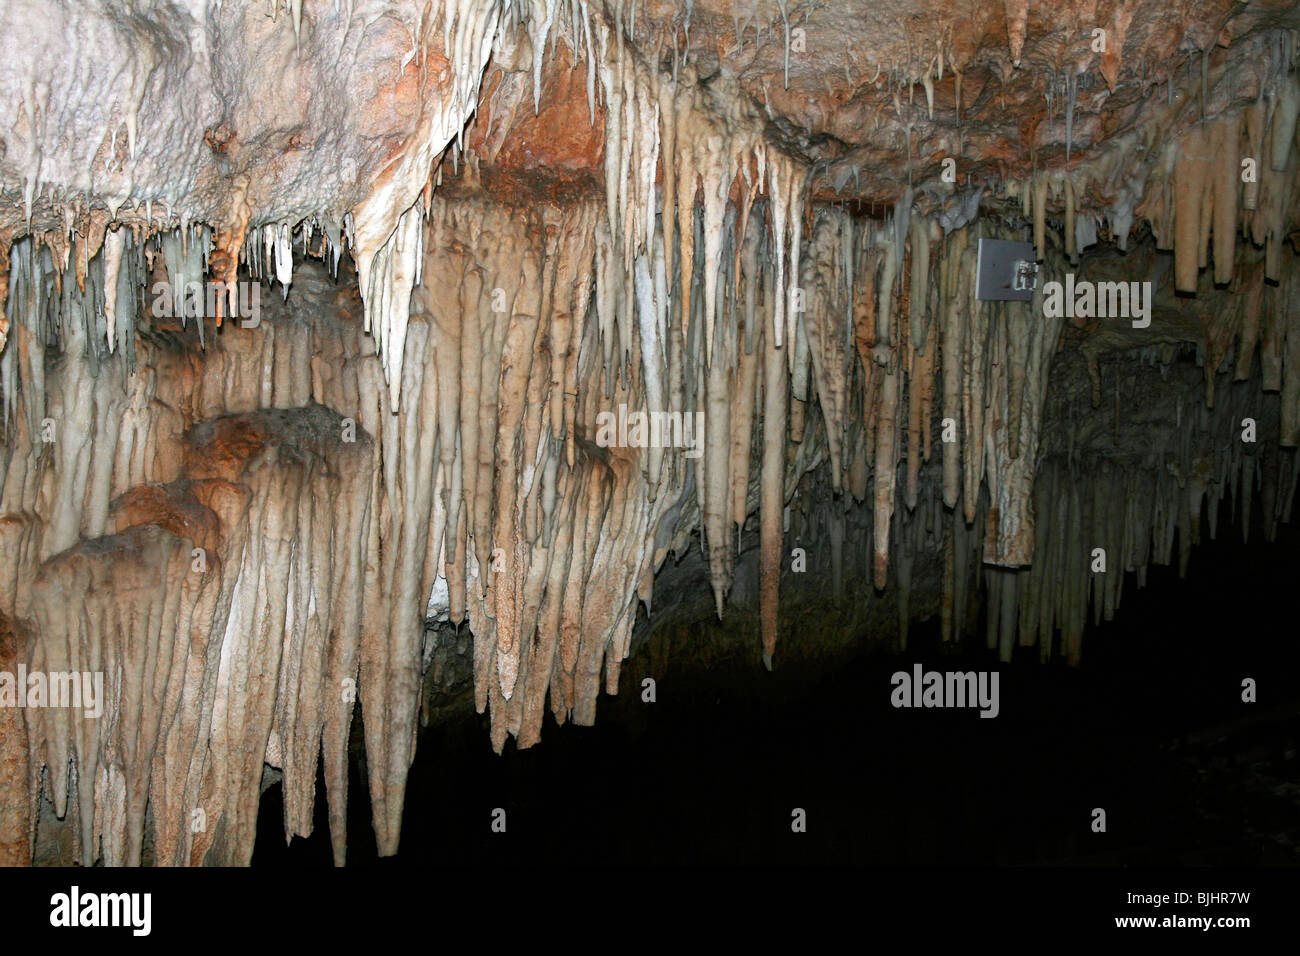 Bermuda è la Grotta dei Cristalli è il più conosciuto dell'isola antri sotterranei. Qui illustrato è una sezione di stalattiti bianche. Foto Stock